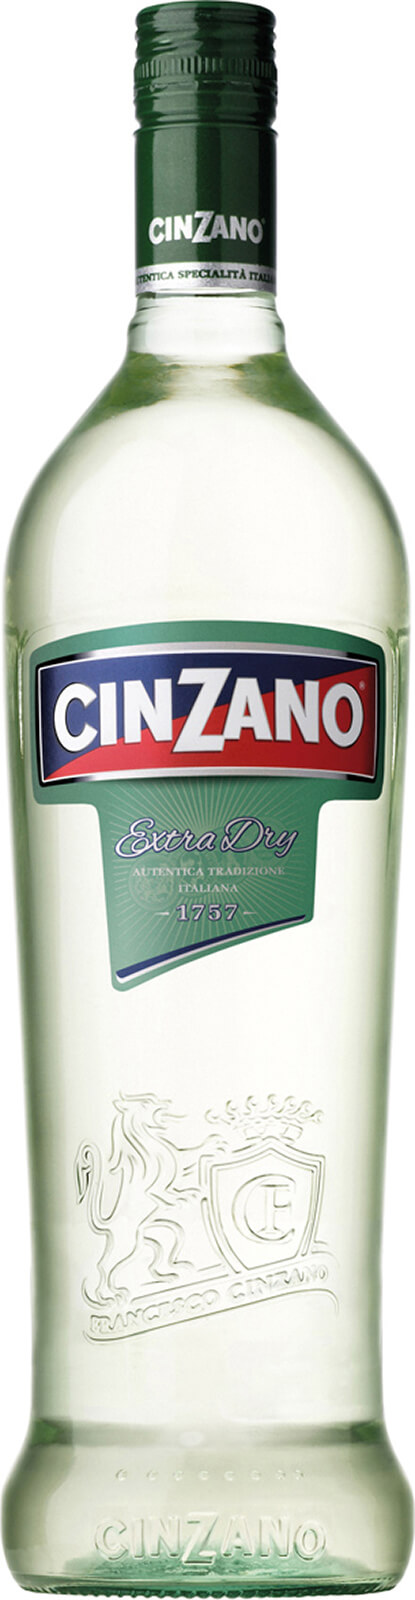 Cinzano Extra Dry Vermouth bei barfish.de kaufen | Weitere Spirituosen